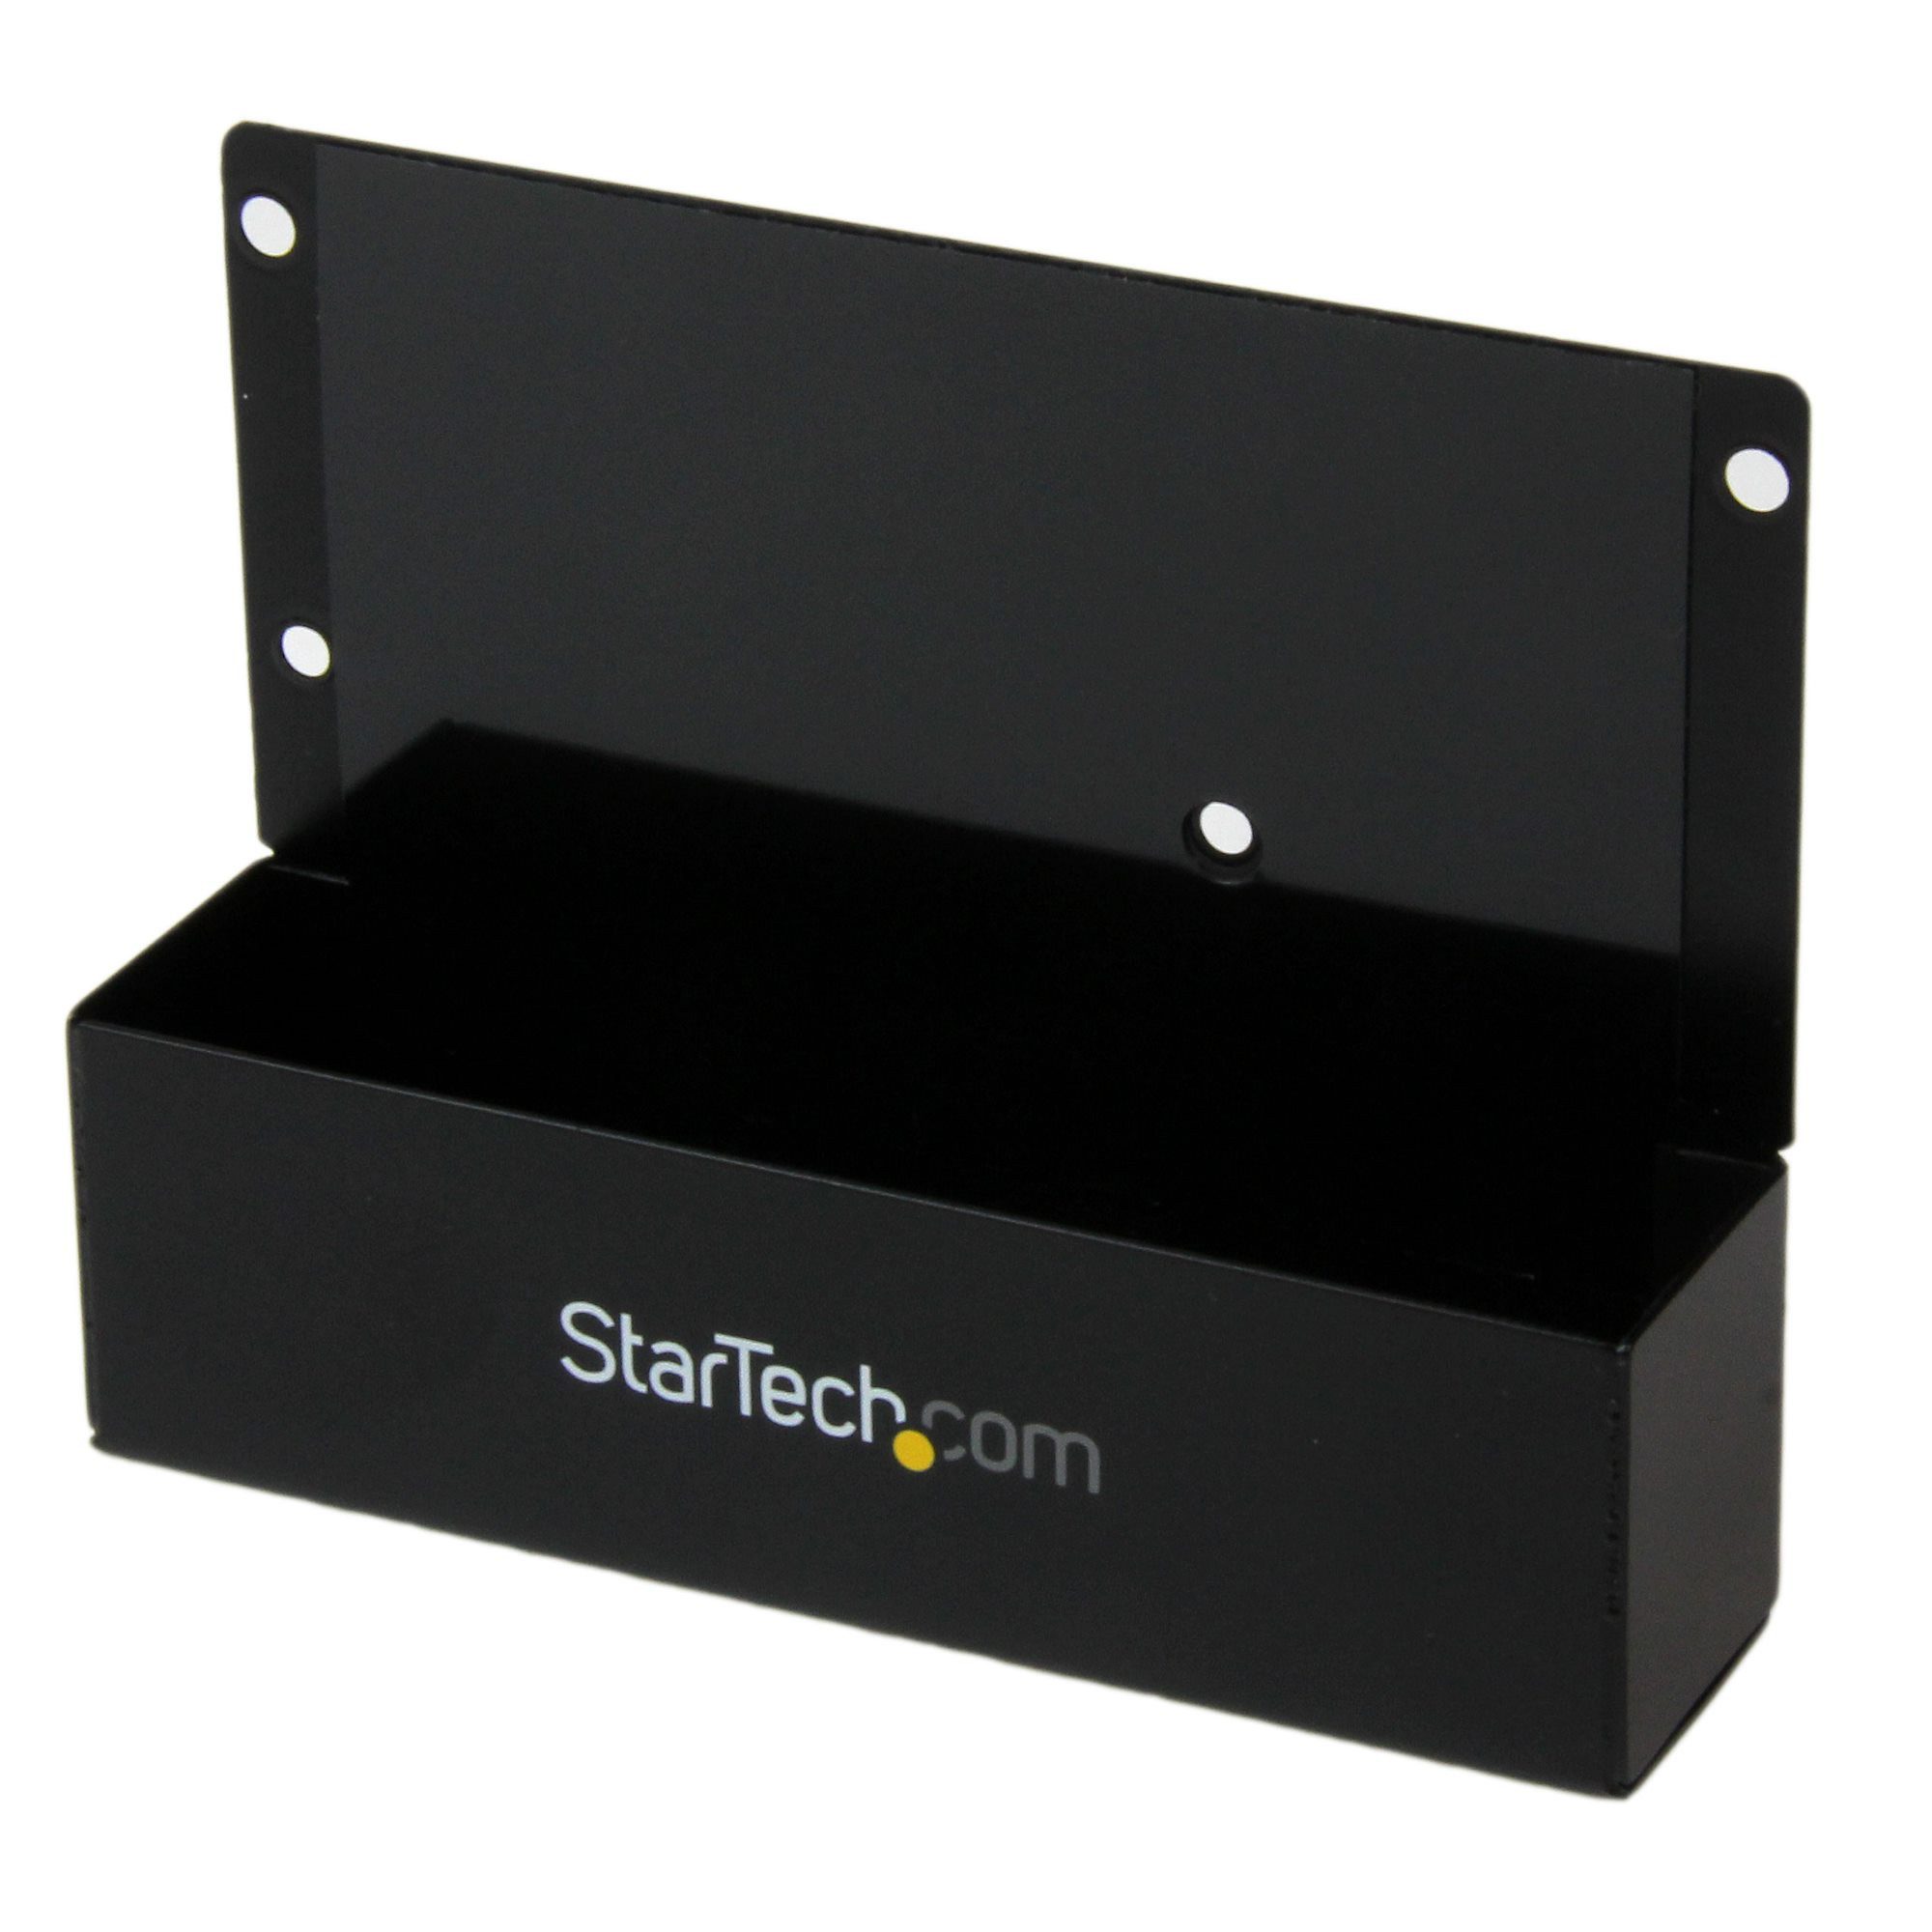 Startech.com Festplatten-Gehäuse STARTECH.COM 2,5 Zoll auf 3,5 Zoll Festplattenadapter - HDD Adapter Br